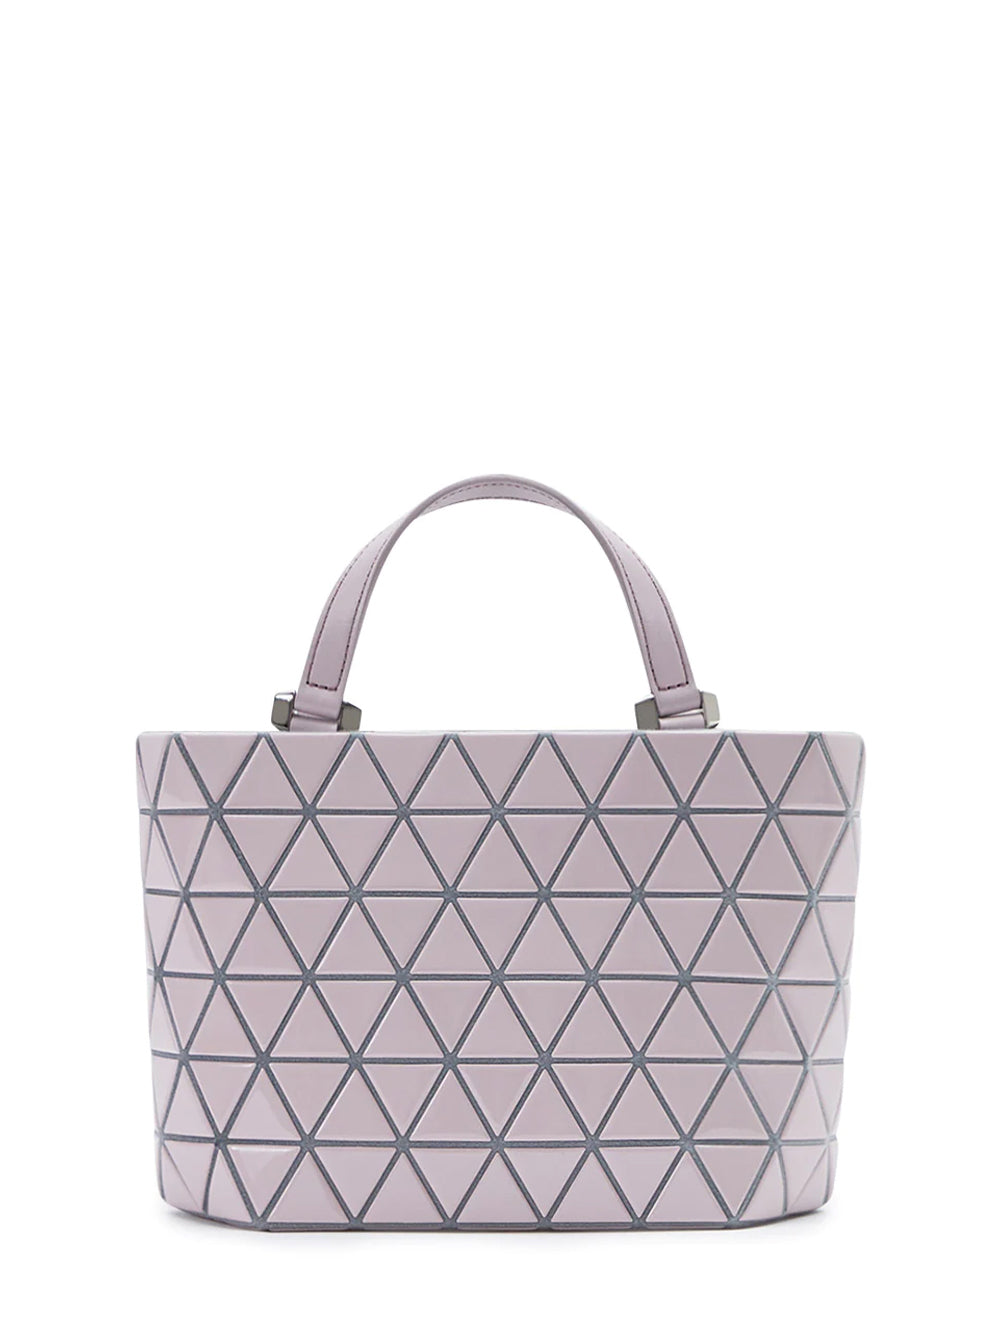 CRYSTAL GLOSS Handbag (Mini) (Light Pink)